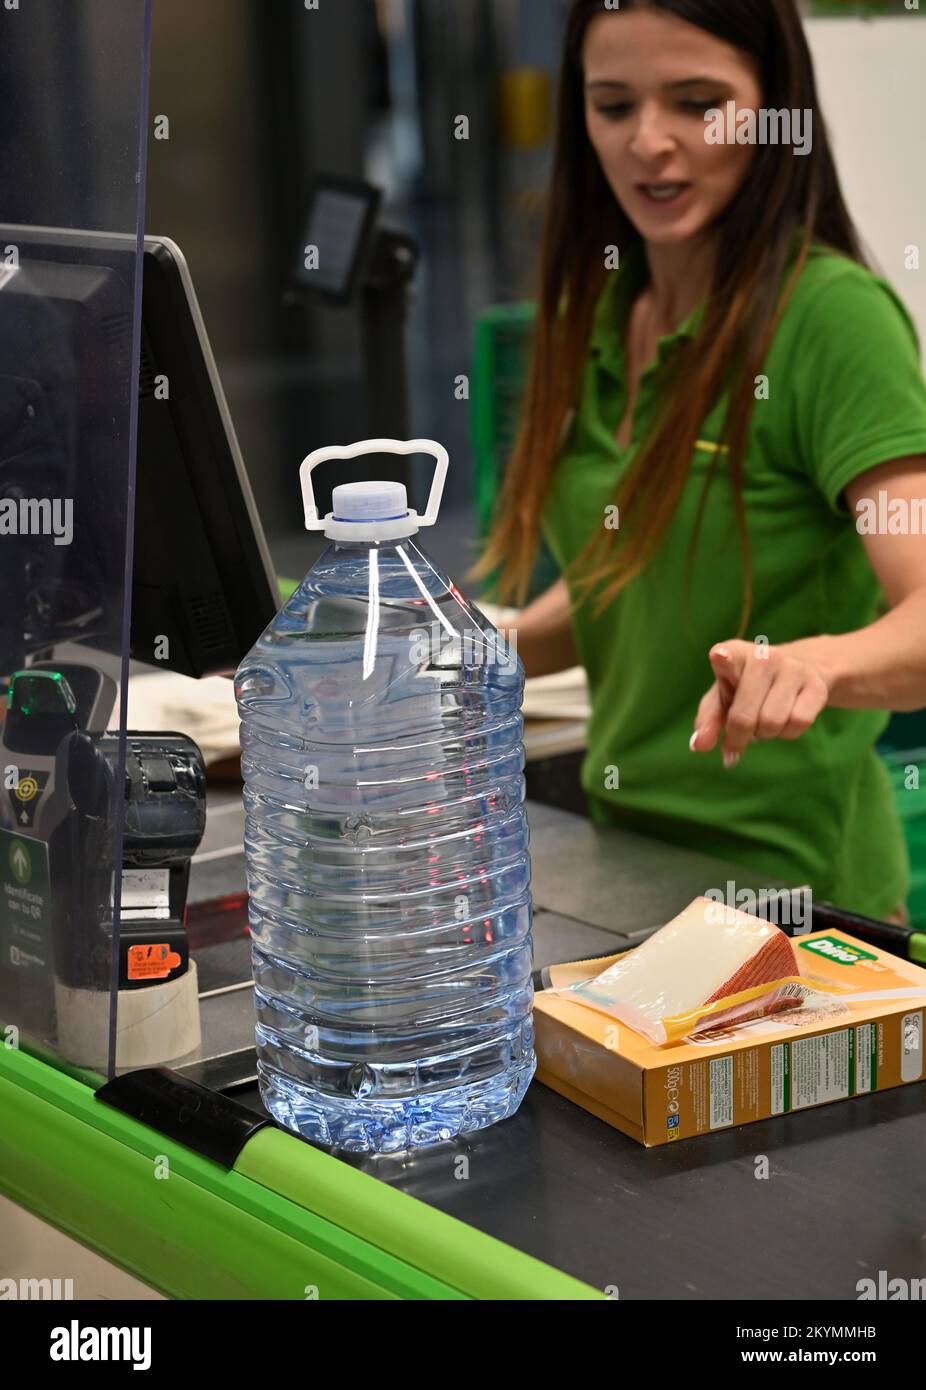 Beim Check-out im Supermarkt gab es eine große Flasche Wasser und das Essen wurde vom Personal für die Kasse auf dem Förderband berechnet Stockfoto